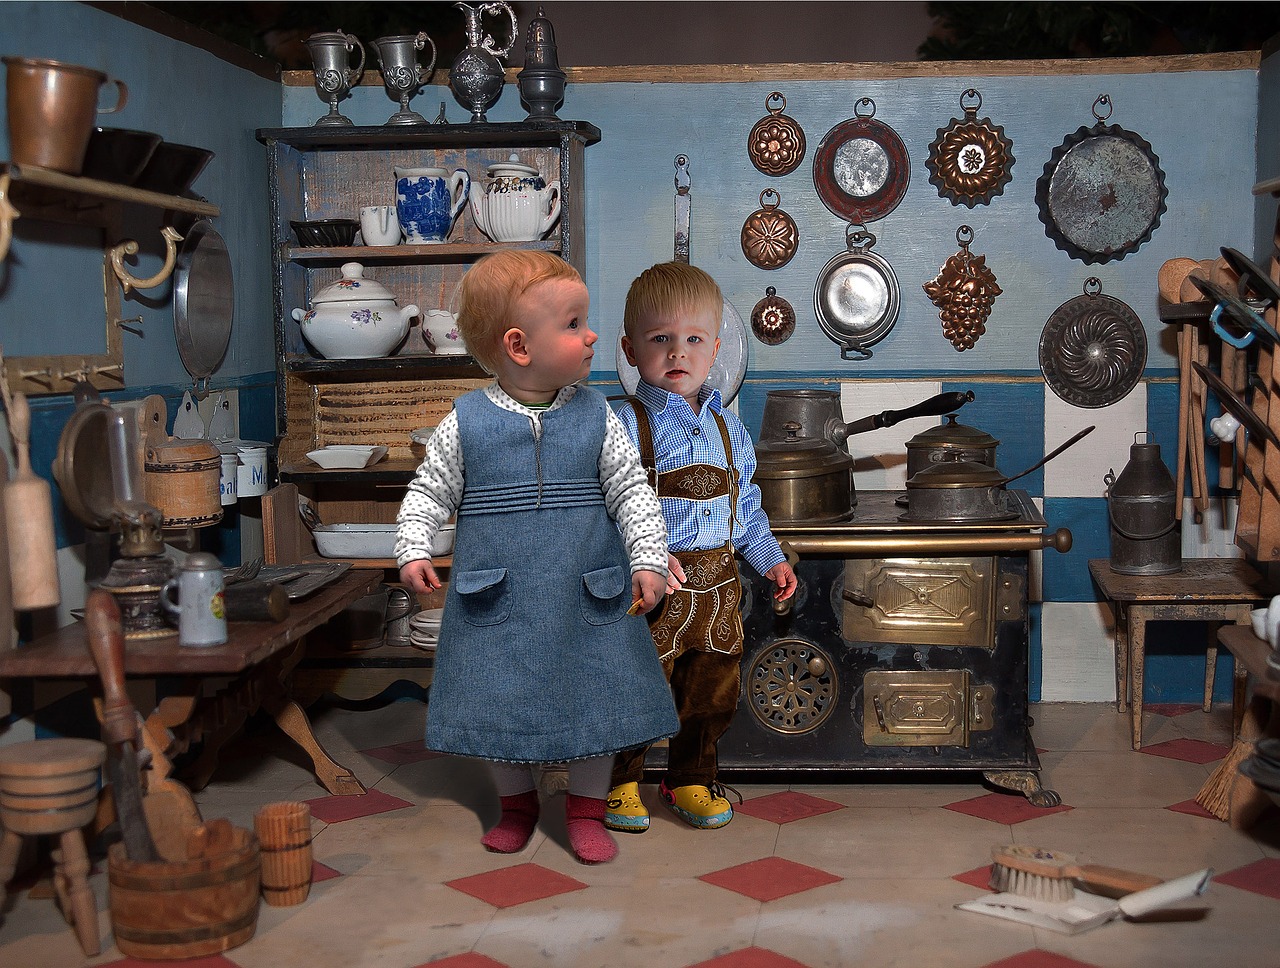 Image - dolls kitchen inhabited children